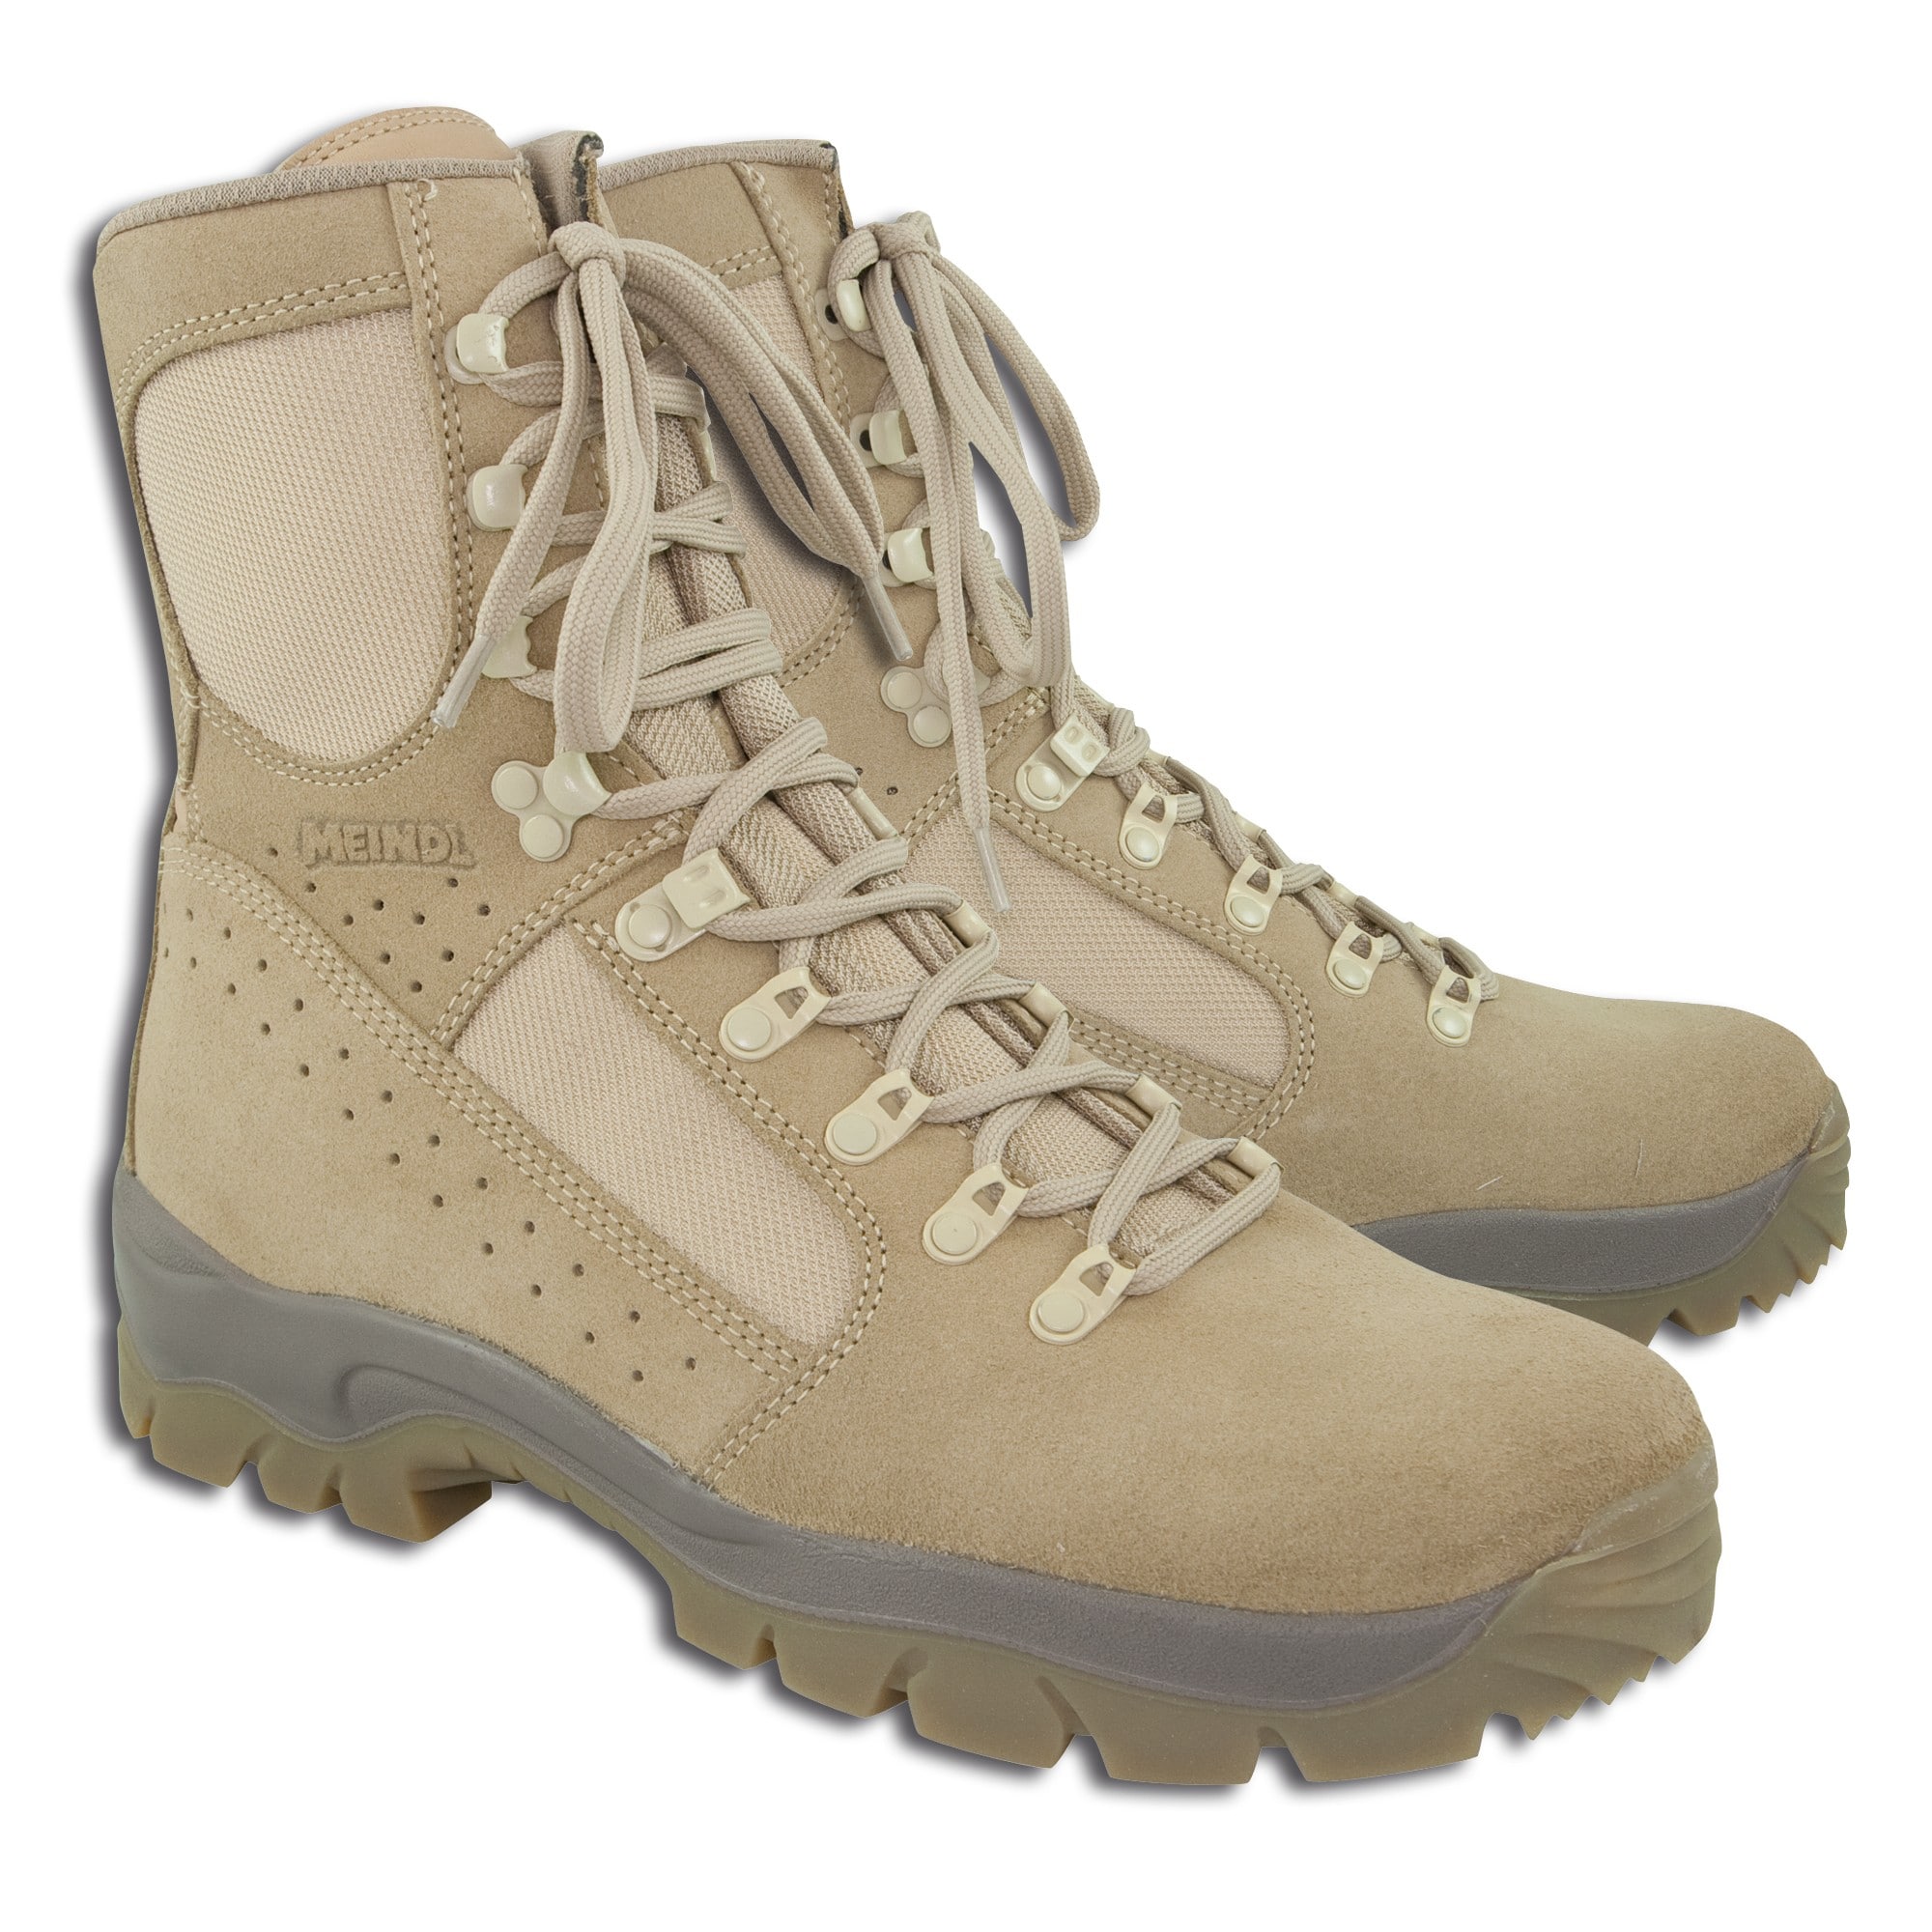 combat boots